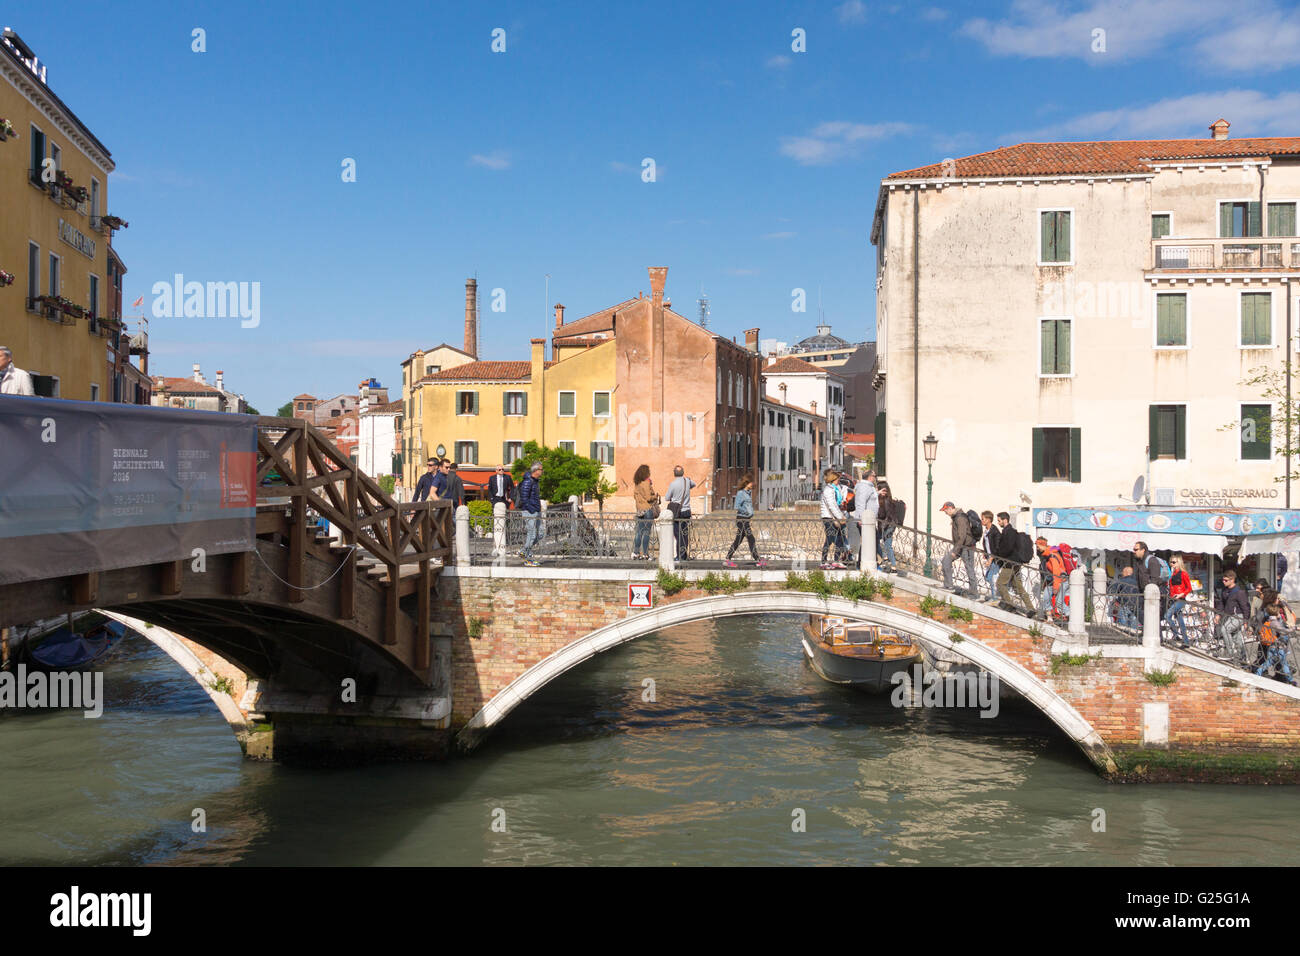 Le tre ponti - non tre, ma cinque ponti in muratura, legno e pietra che attraversano il Rio nuovo a Santa Croce, Venezia, Italia Foto Stock